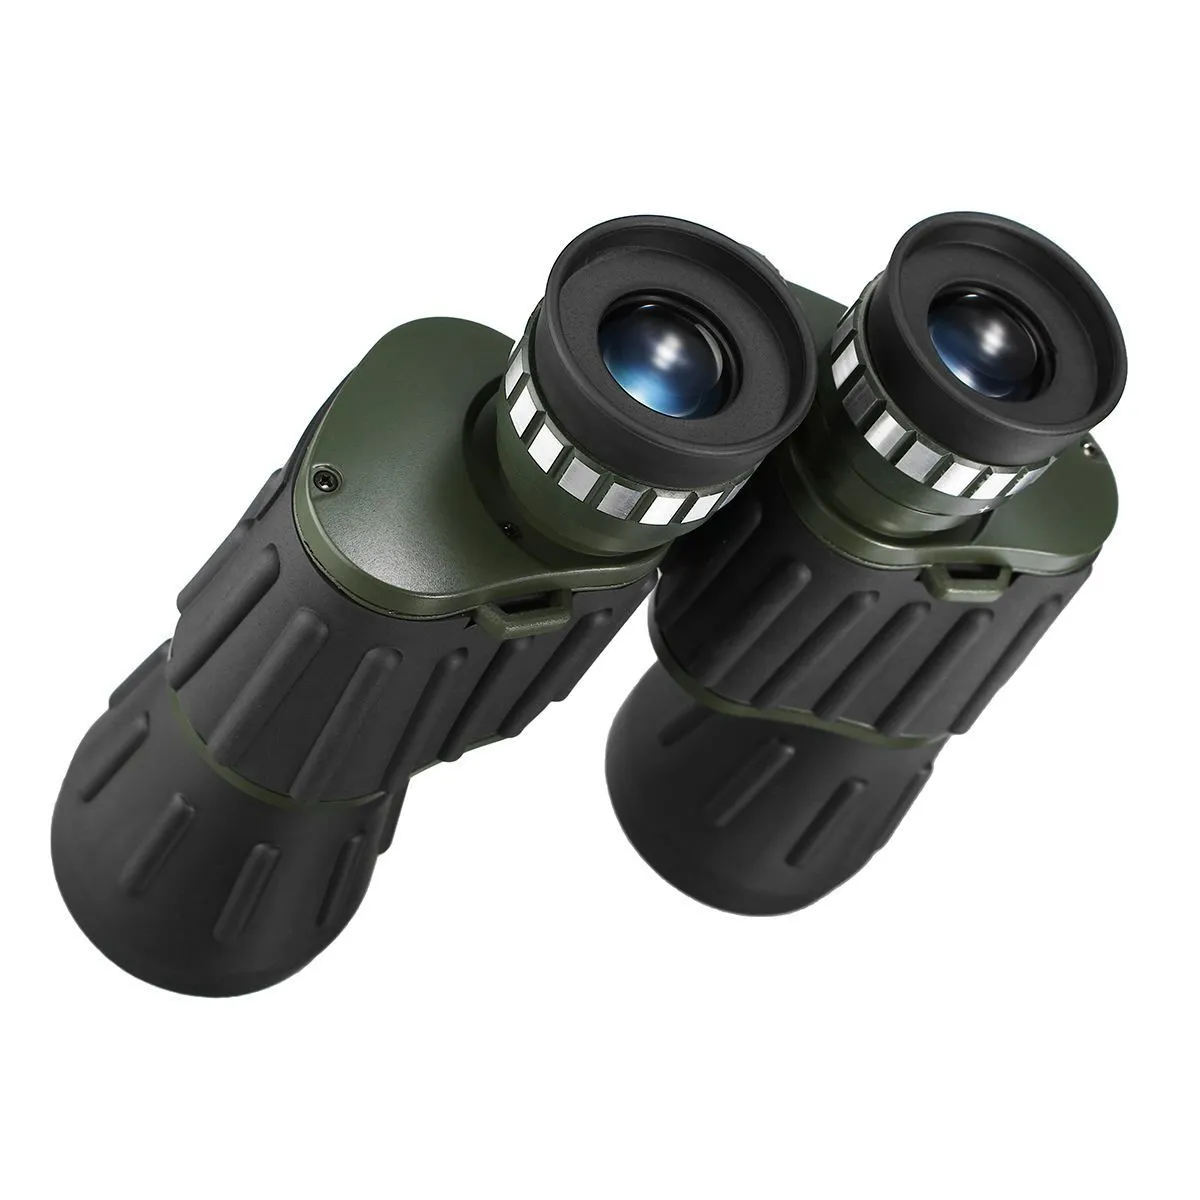 ナイトビジョンの戦術的双眼鏡ハイクラリティテレススコープストレージバッグで狩りをするための高出力双眼鏡LJ2011202598405